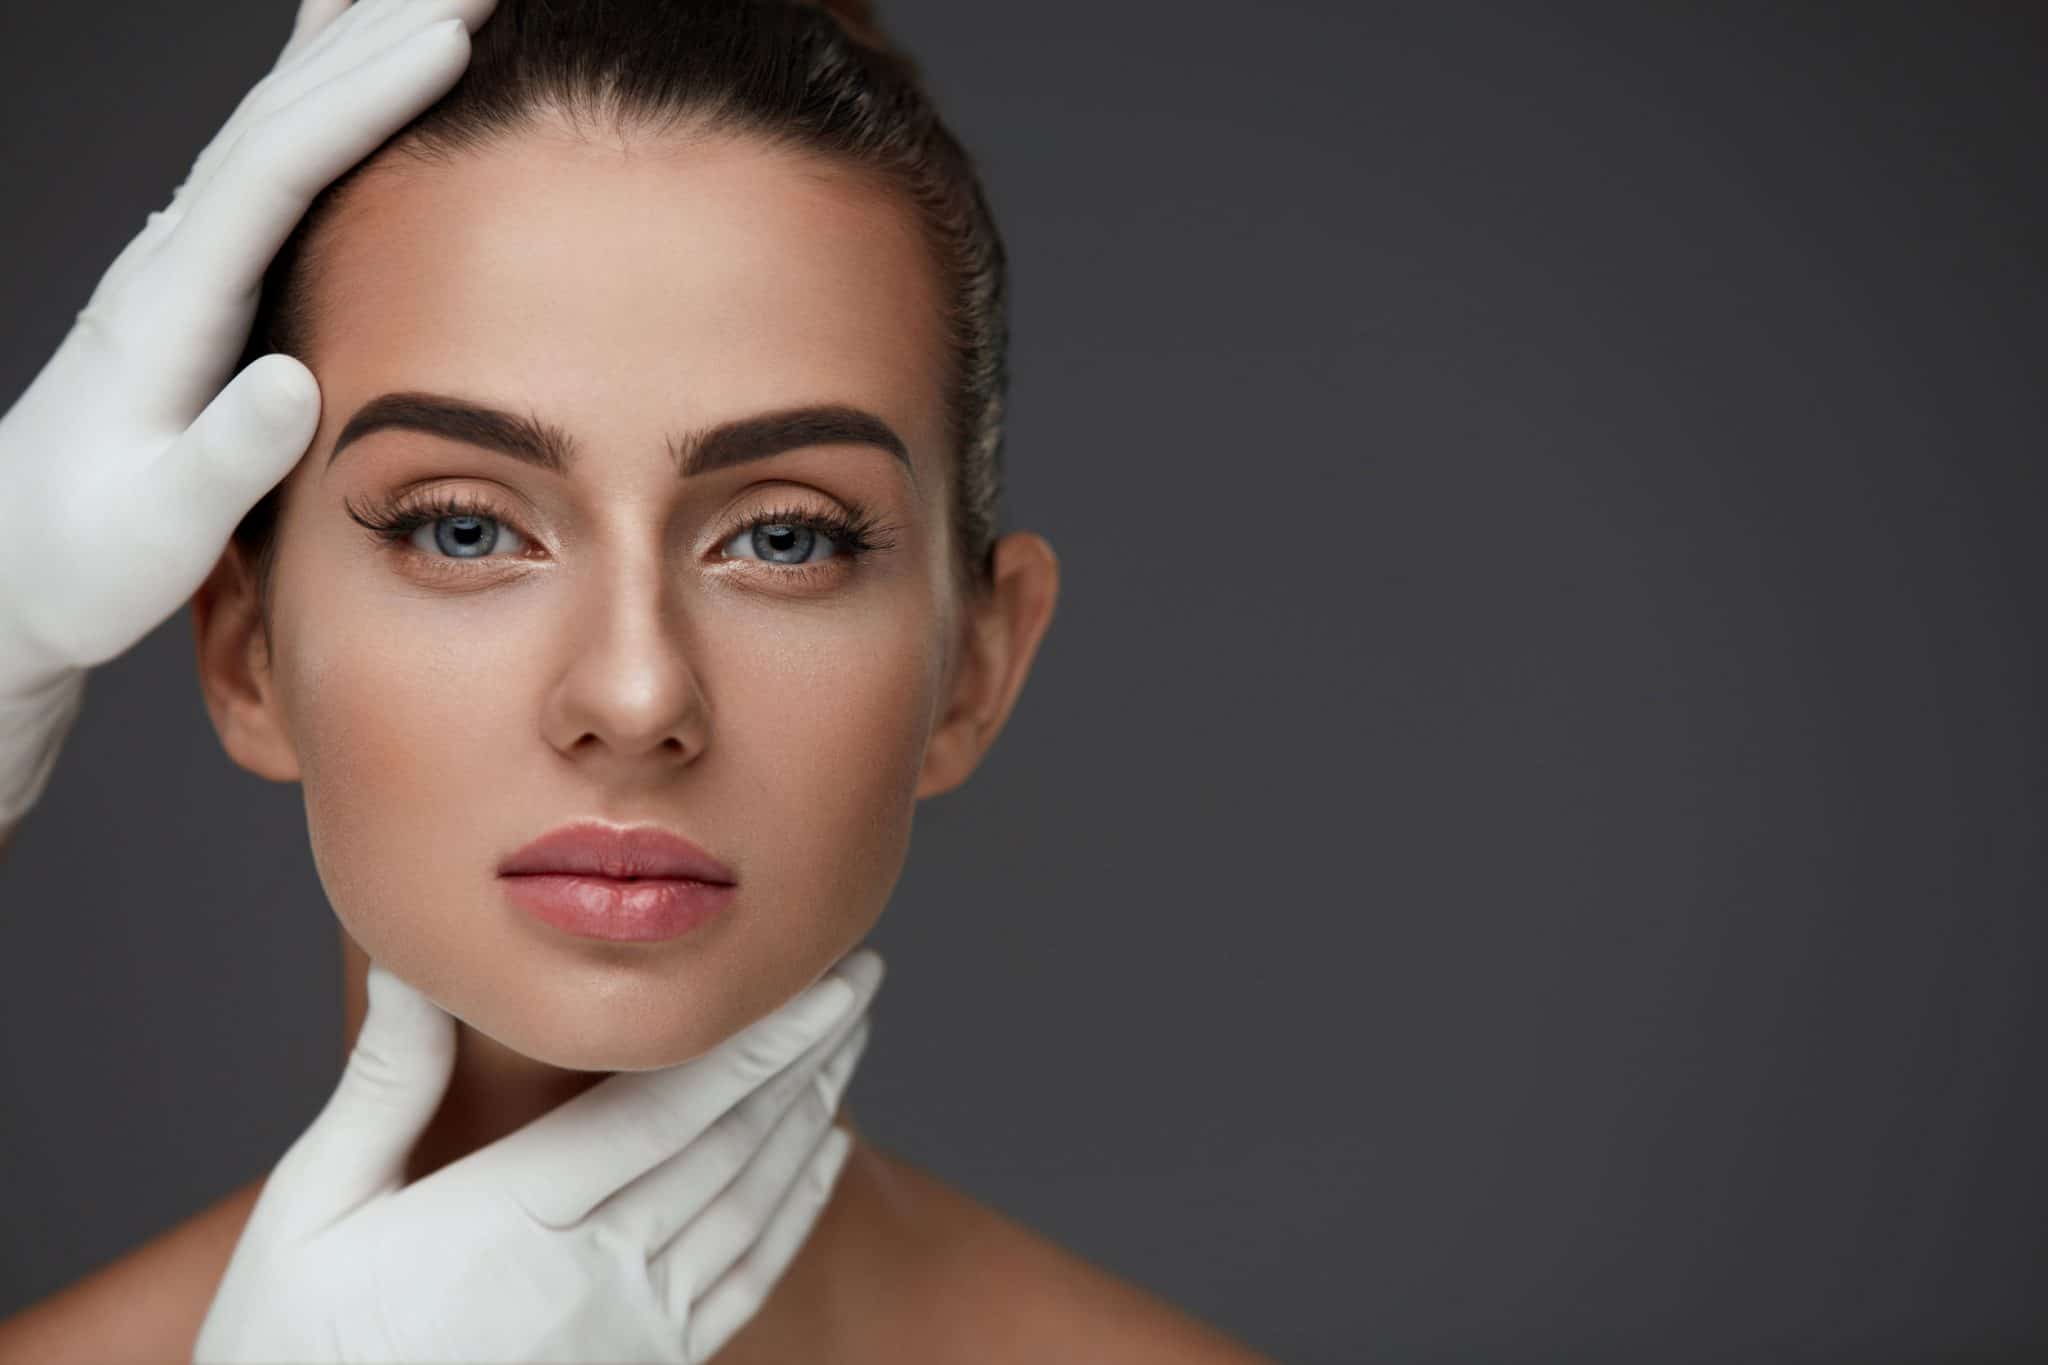 Harmonização Facial: Rosto esculpido sem cirurgia plástica – Dr. Enio  Giacchetto